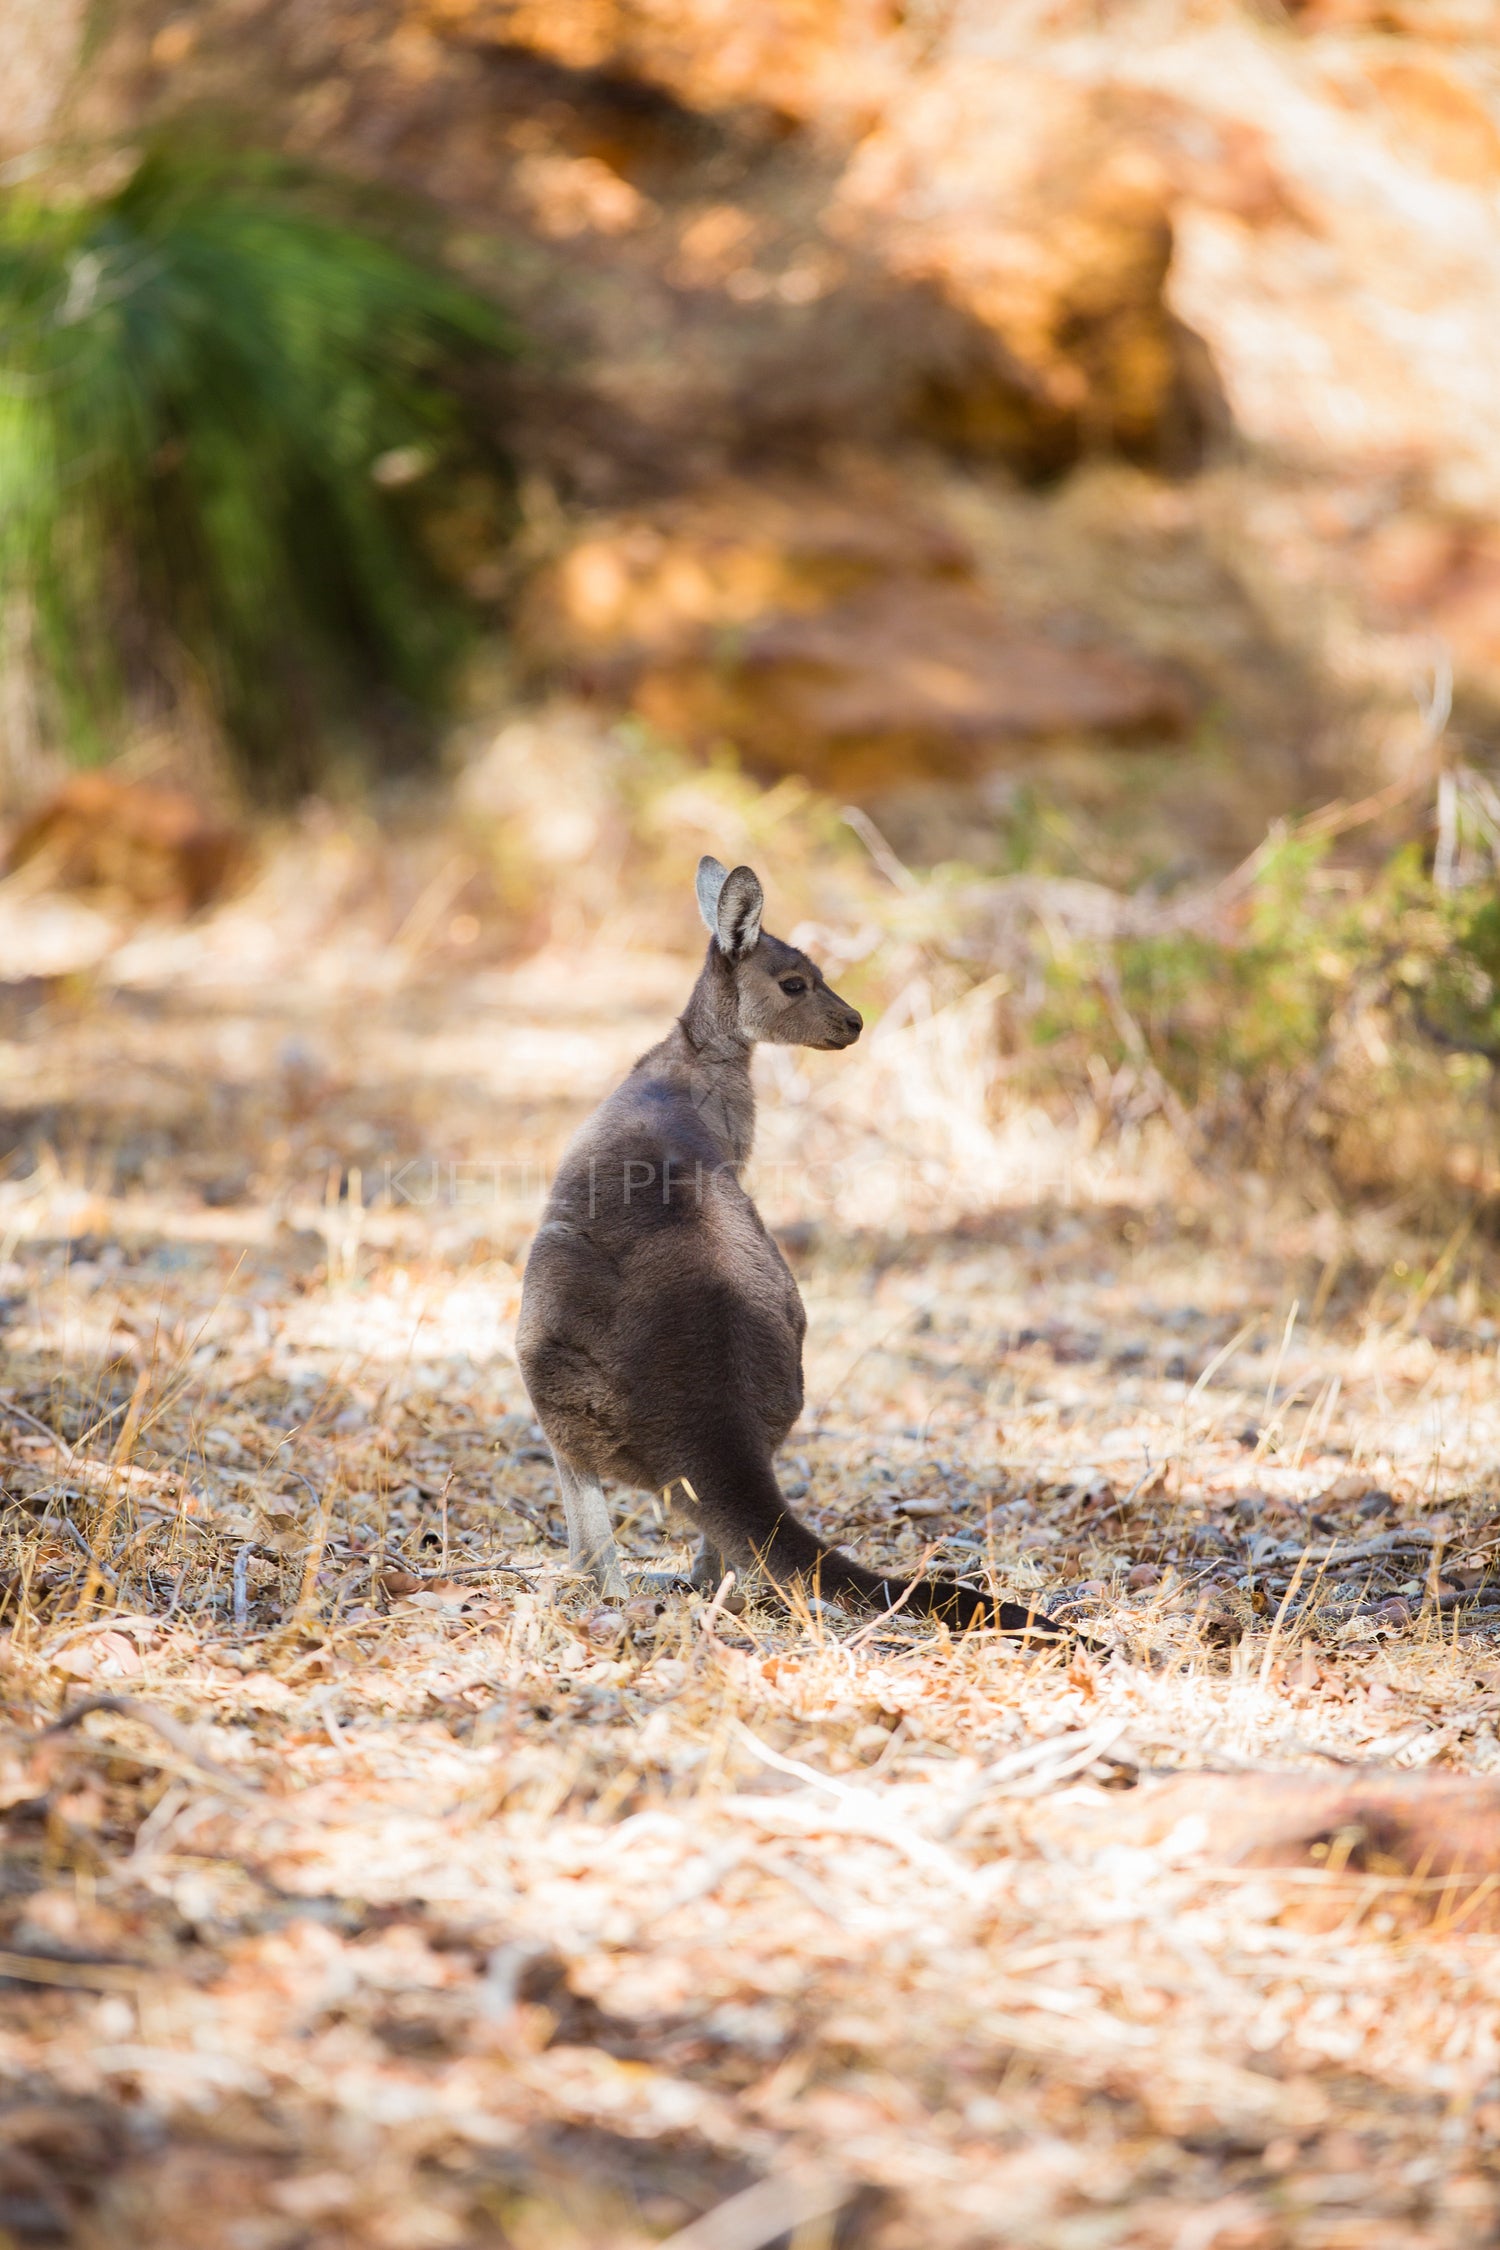 Young and small kangaroo